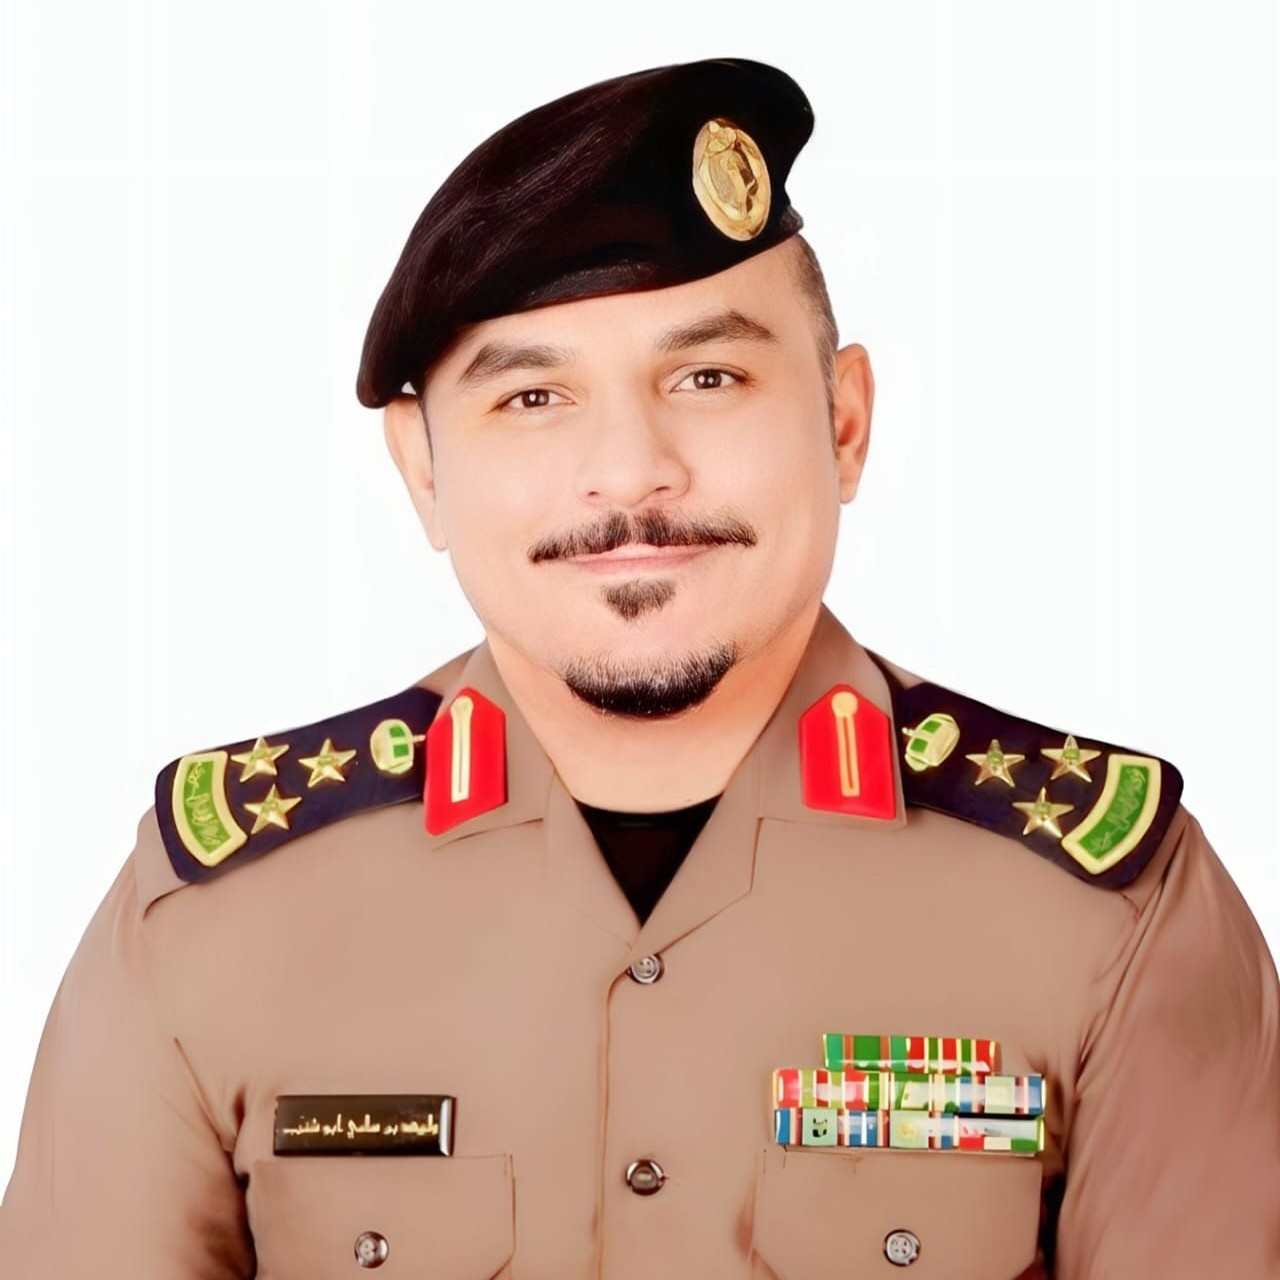 Brig. Gen. Walid bin Sami Abu Shanab